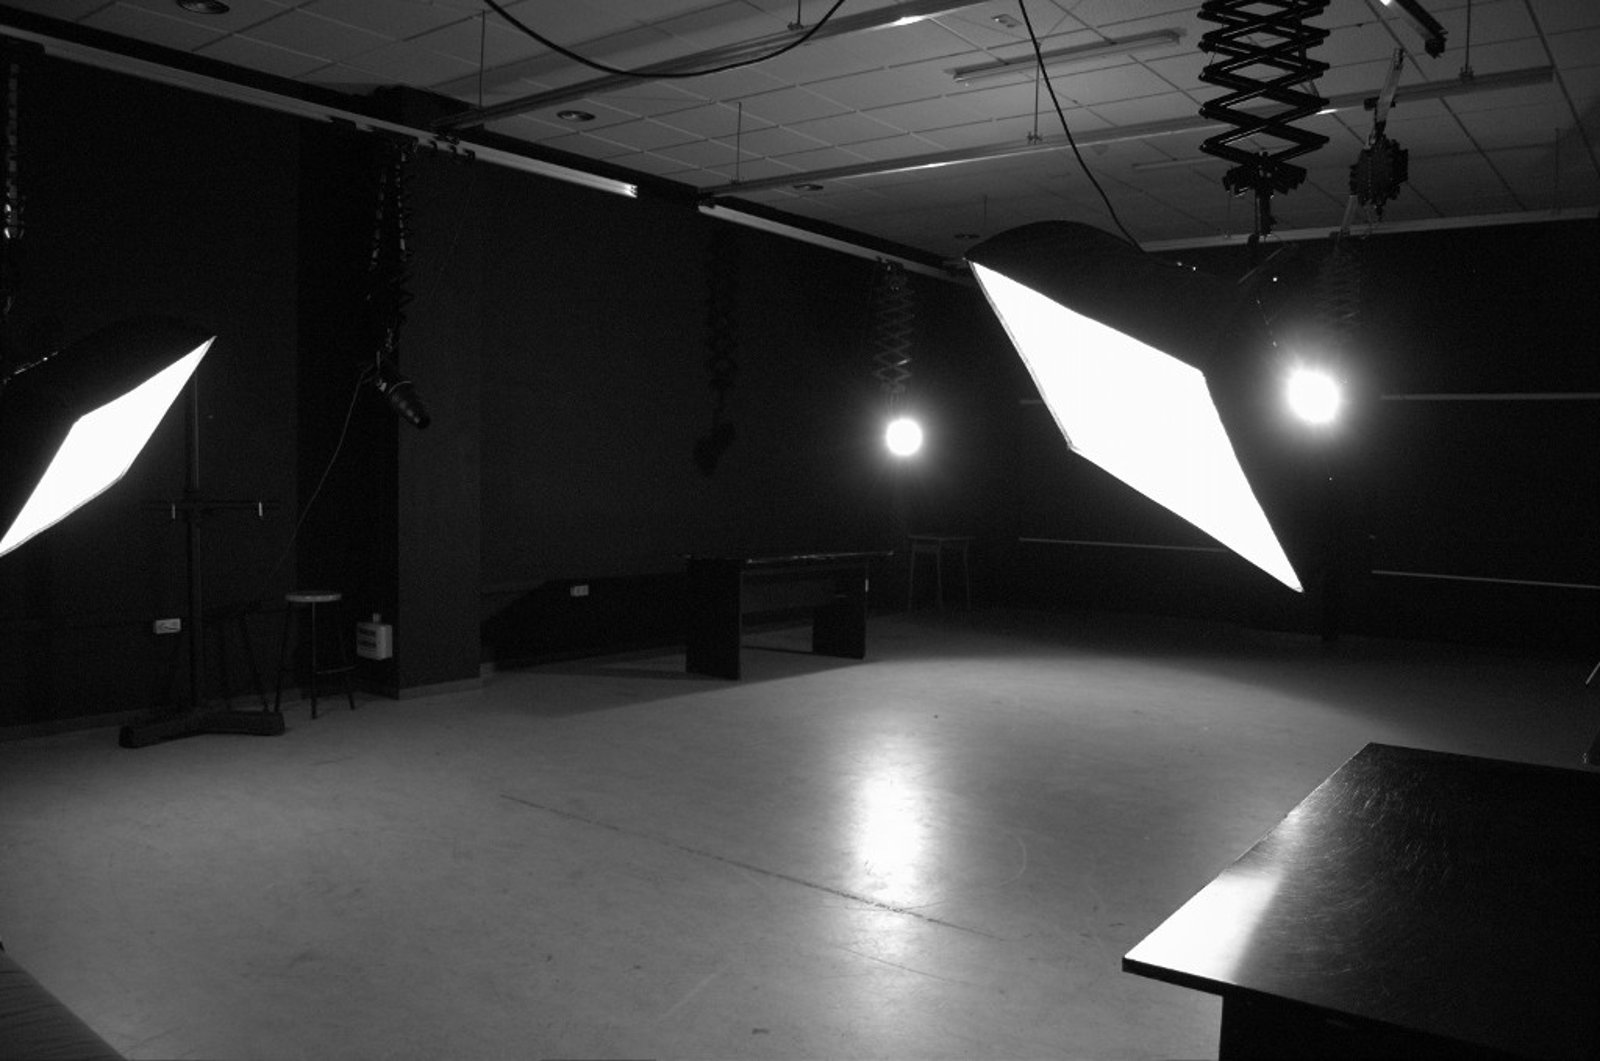 Escuela de Imagen y Sonido de Vigo EISV. Plató profesional de fotografía - plató 100 - Set de prácticas 1